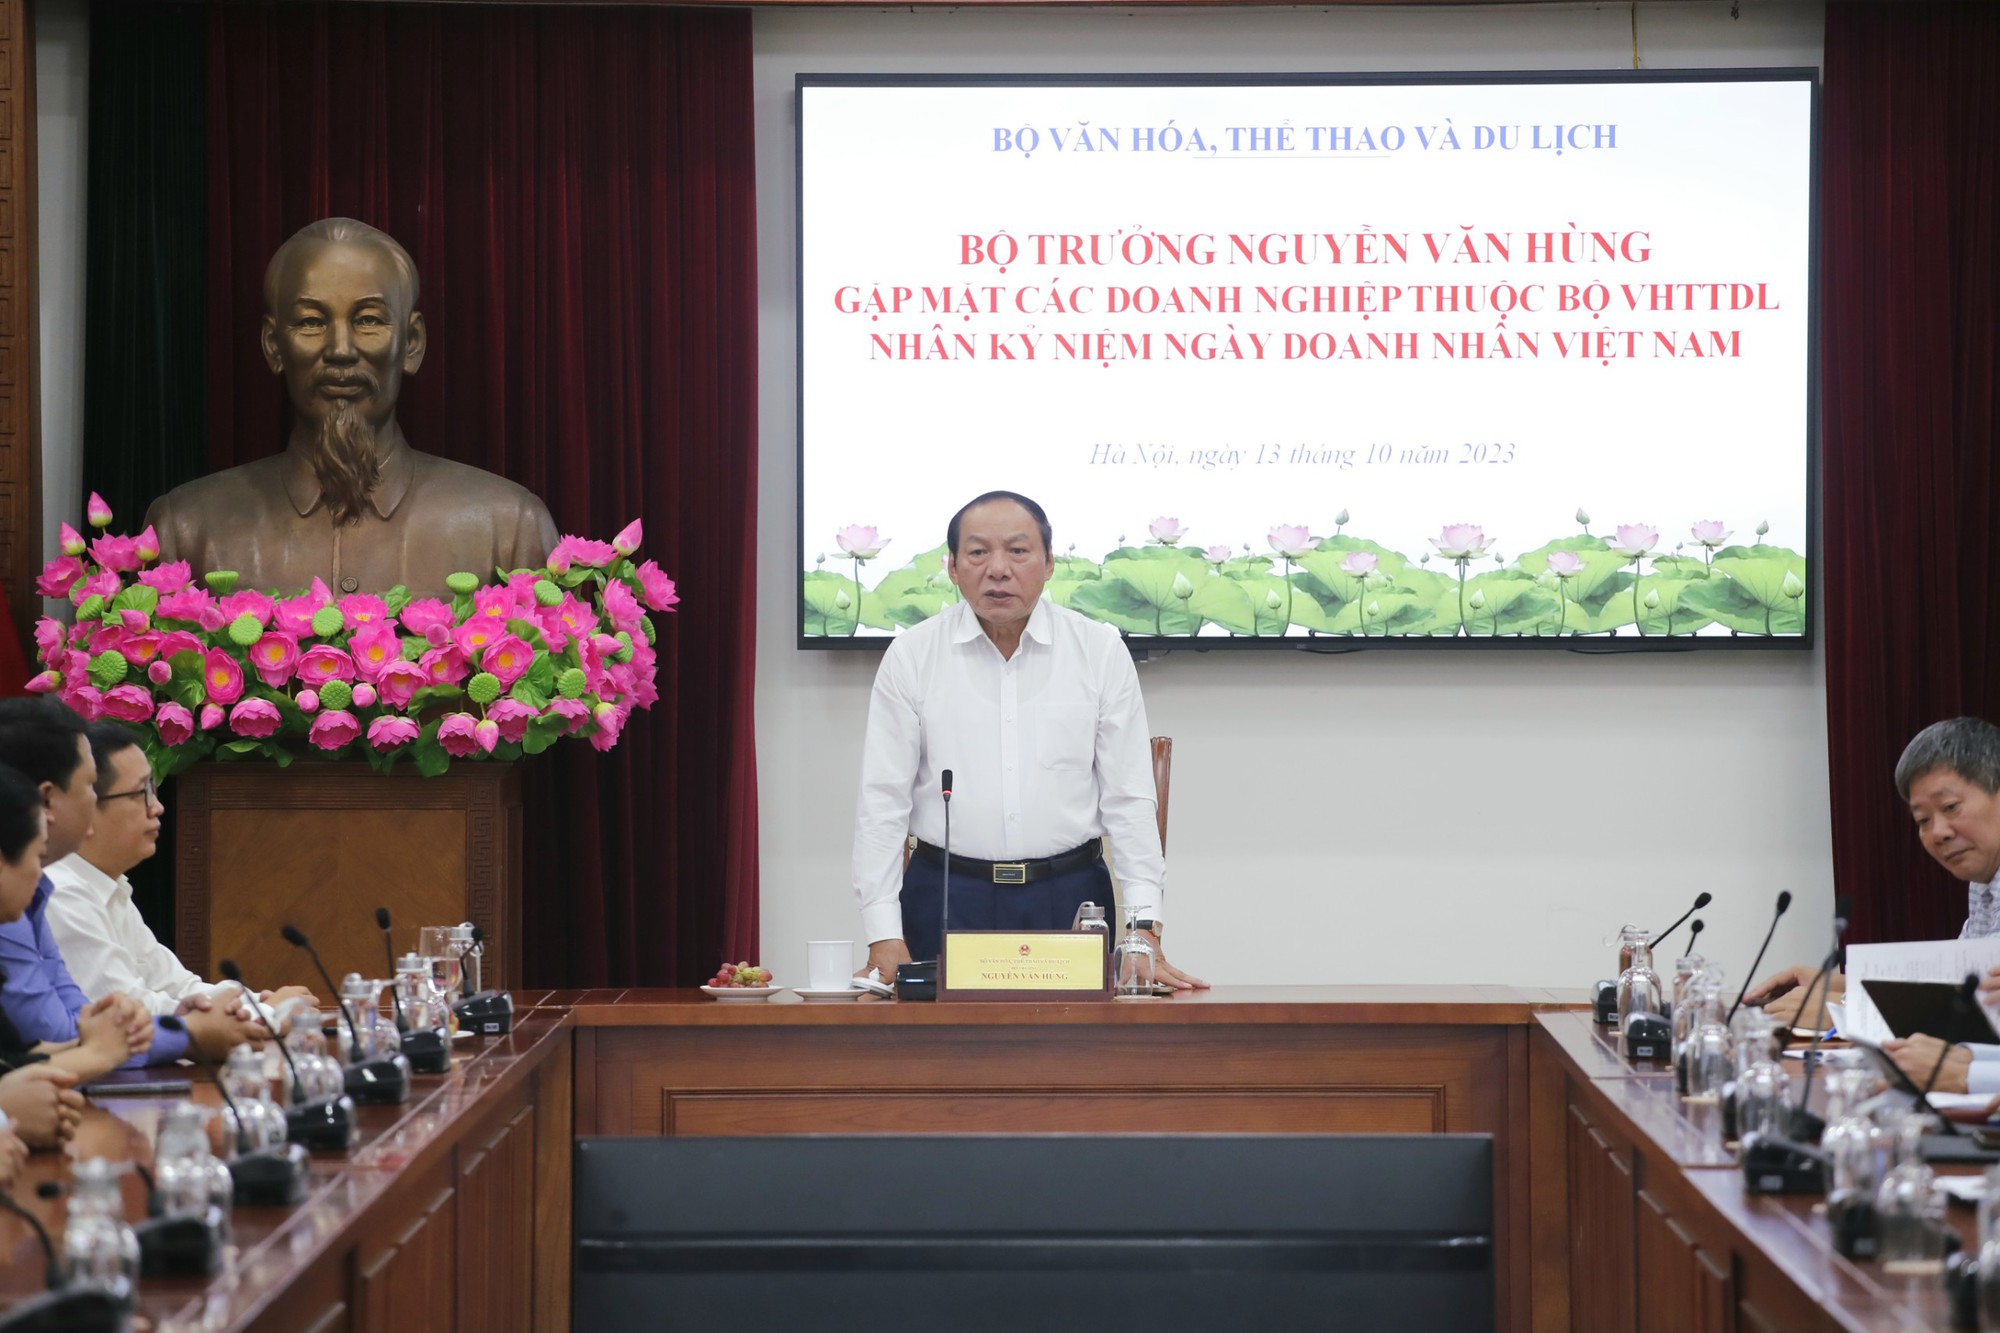 Bộ trưởng Nguyễn Văn Hùng: Doanh nghiệp thuộc Bộ VHTTDL phải có tầm nhìn, tư duy mới để kiến tạo và phát triển - Ảnh 5.